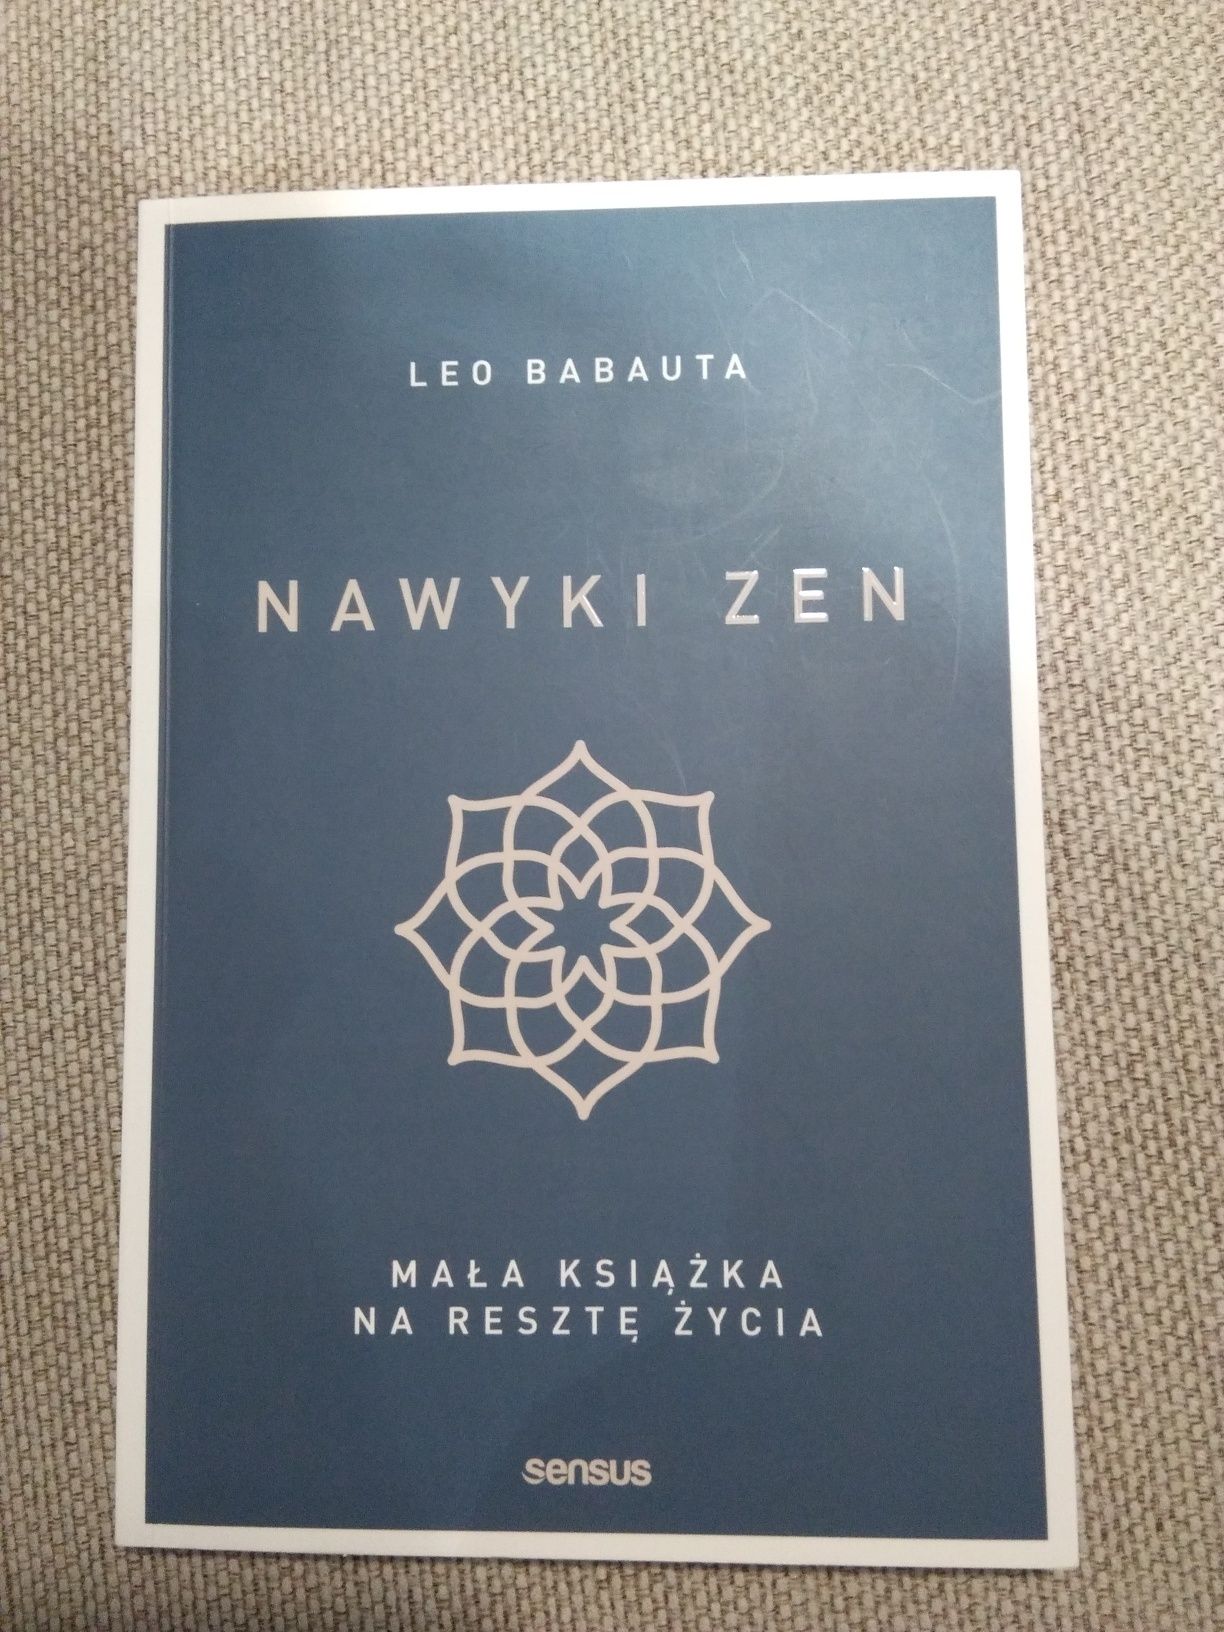 "Nawyki zen", Leo Babauta